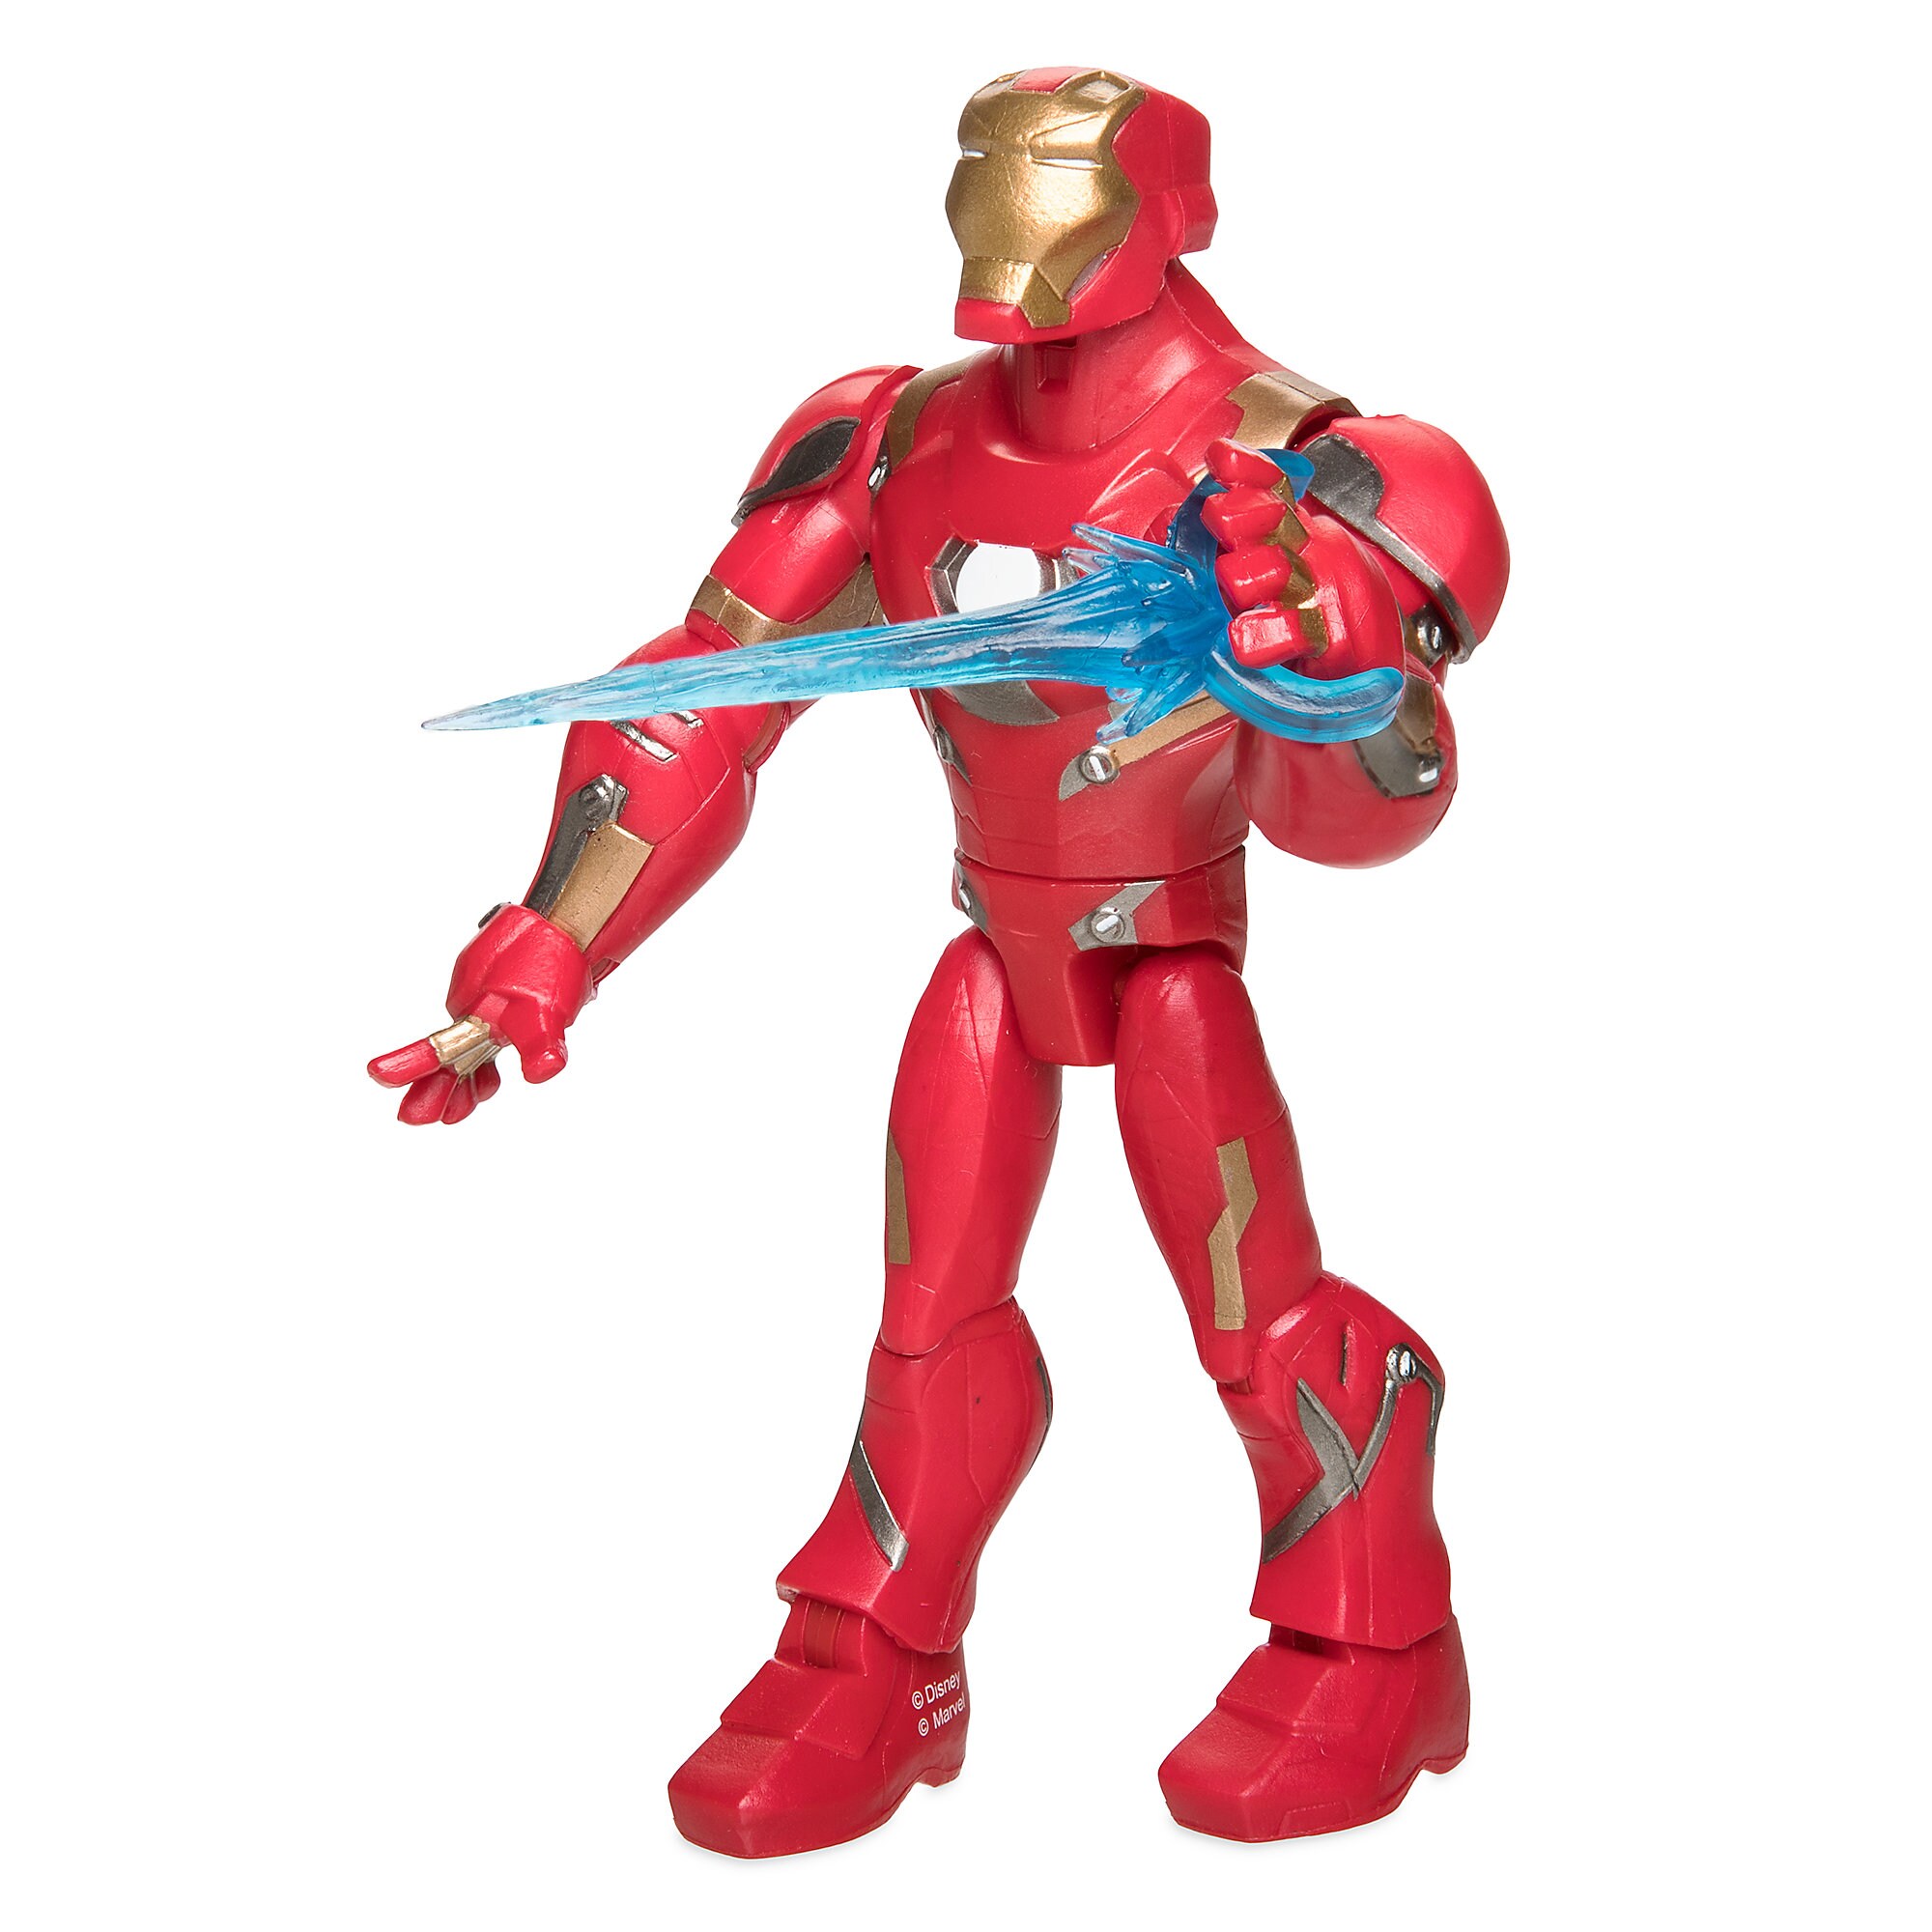 Iron Man Action Figure - Marvel Toybox